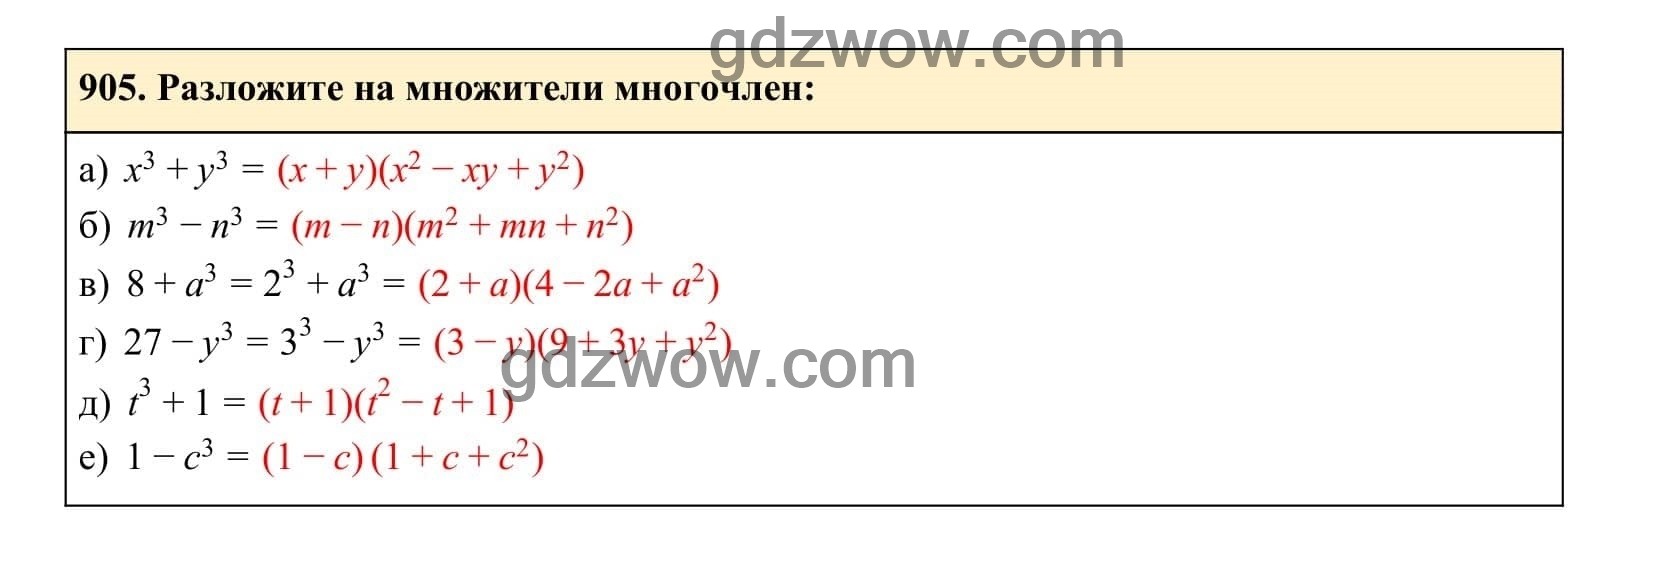 Упражнение 905 - ГДЗ по Алгебре 7 класс Учебник Макарычев (решебник) - GDZwow